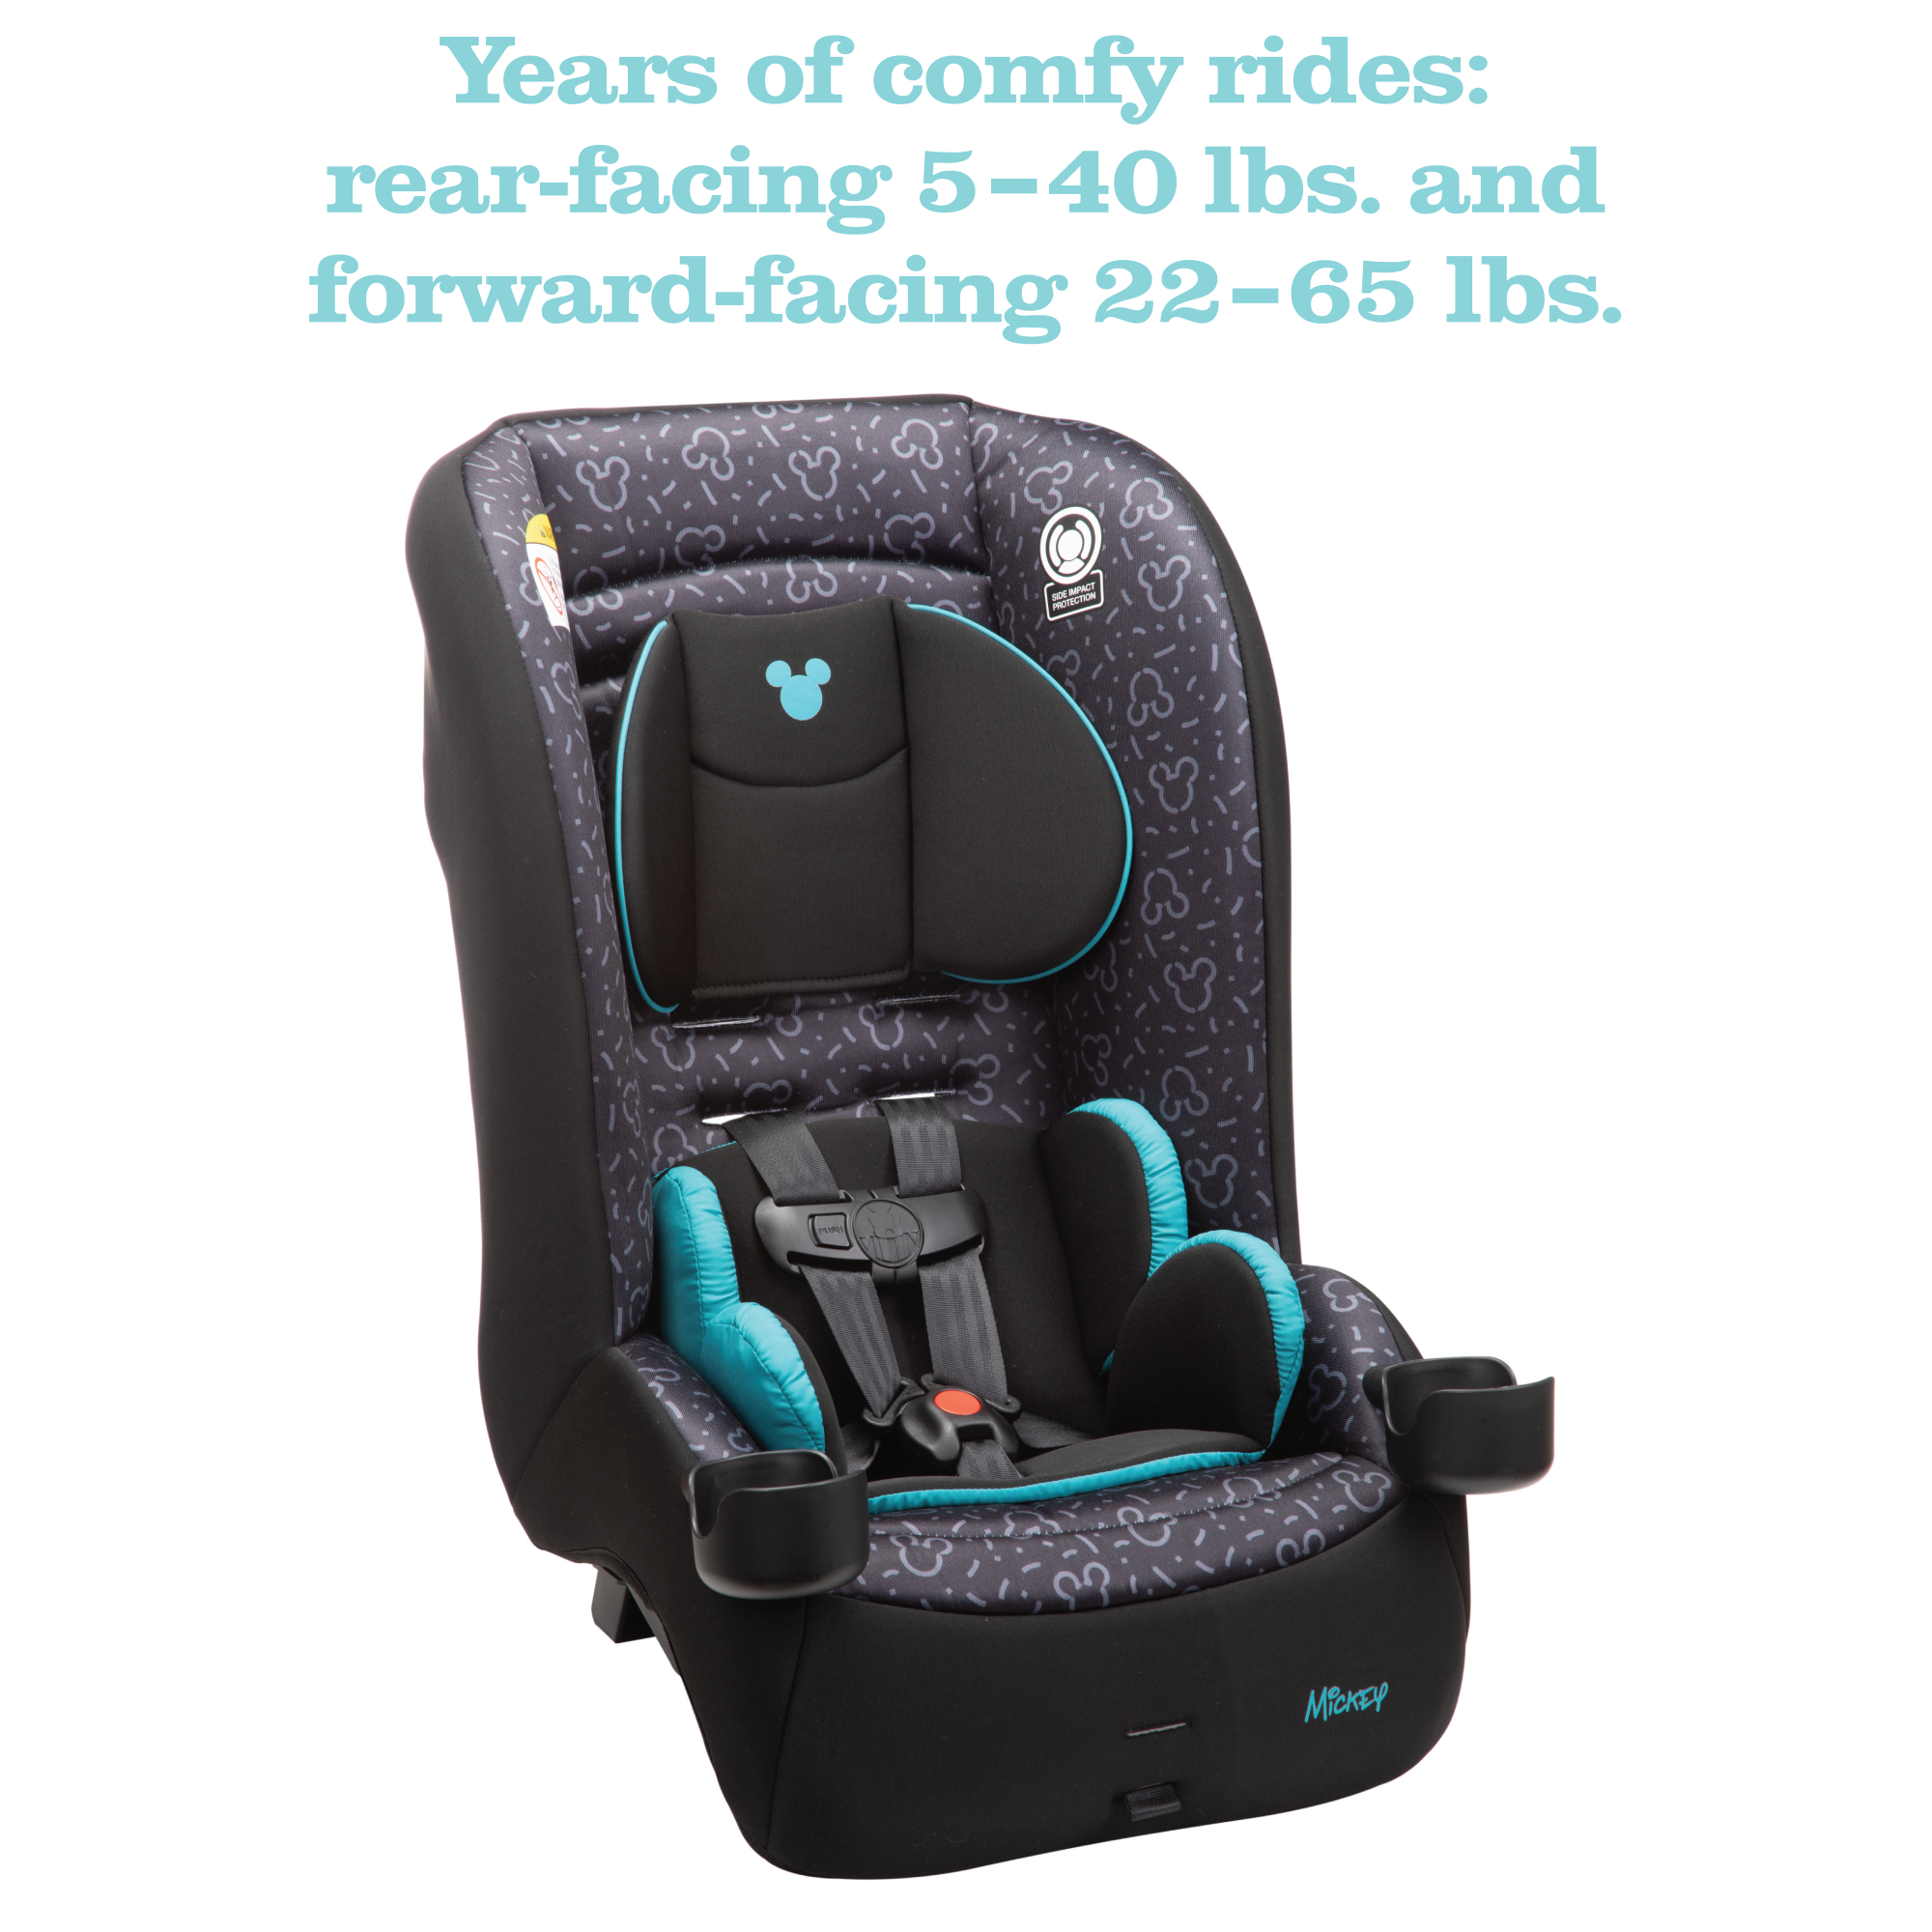 Disney Baby Jive 2-in-1 Convertible Car Seat - years of comfy rides: rear-facing 5-40 lbs. and forward-facing 22-65 lbs.